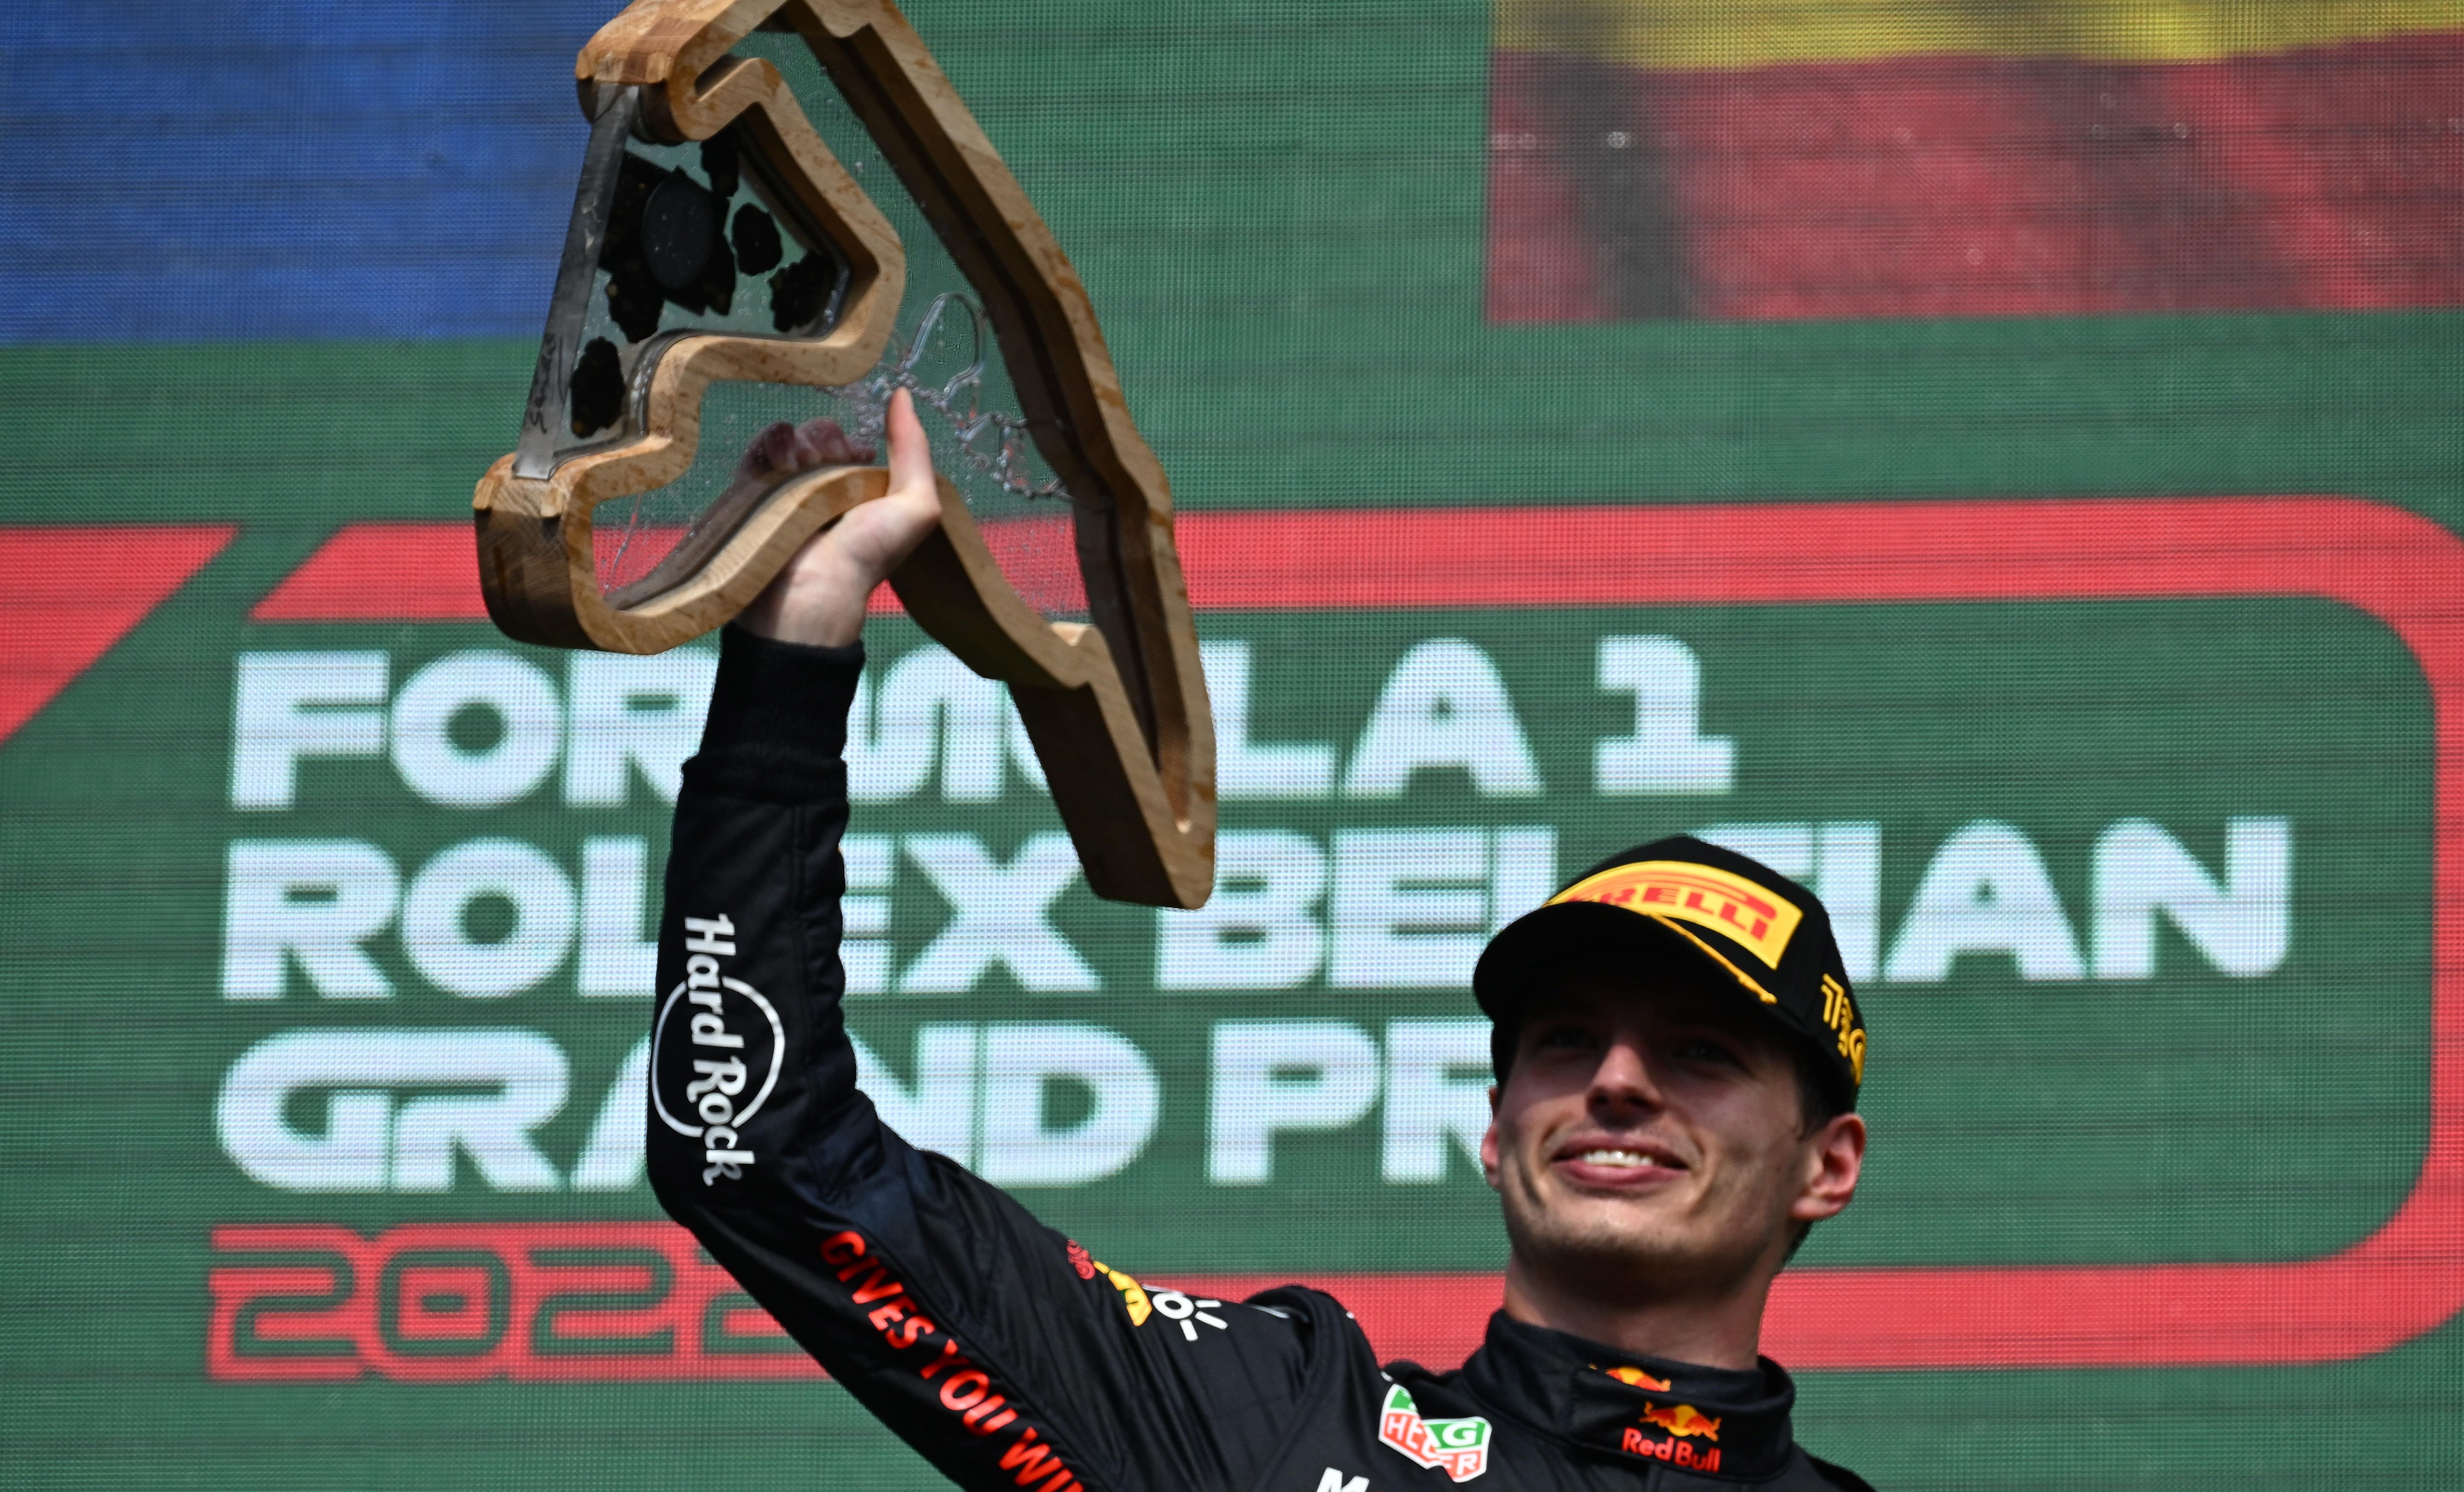 Remuntada de campió de Max Verstappen al GP de Bèlgica amb insult d'Alonso a Hamilton inclòs